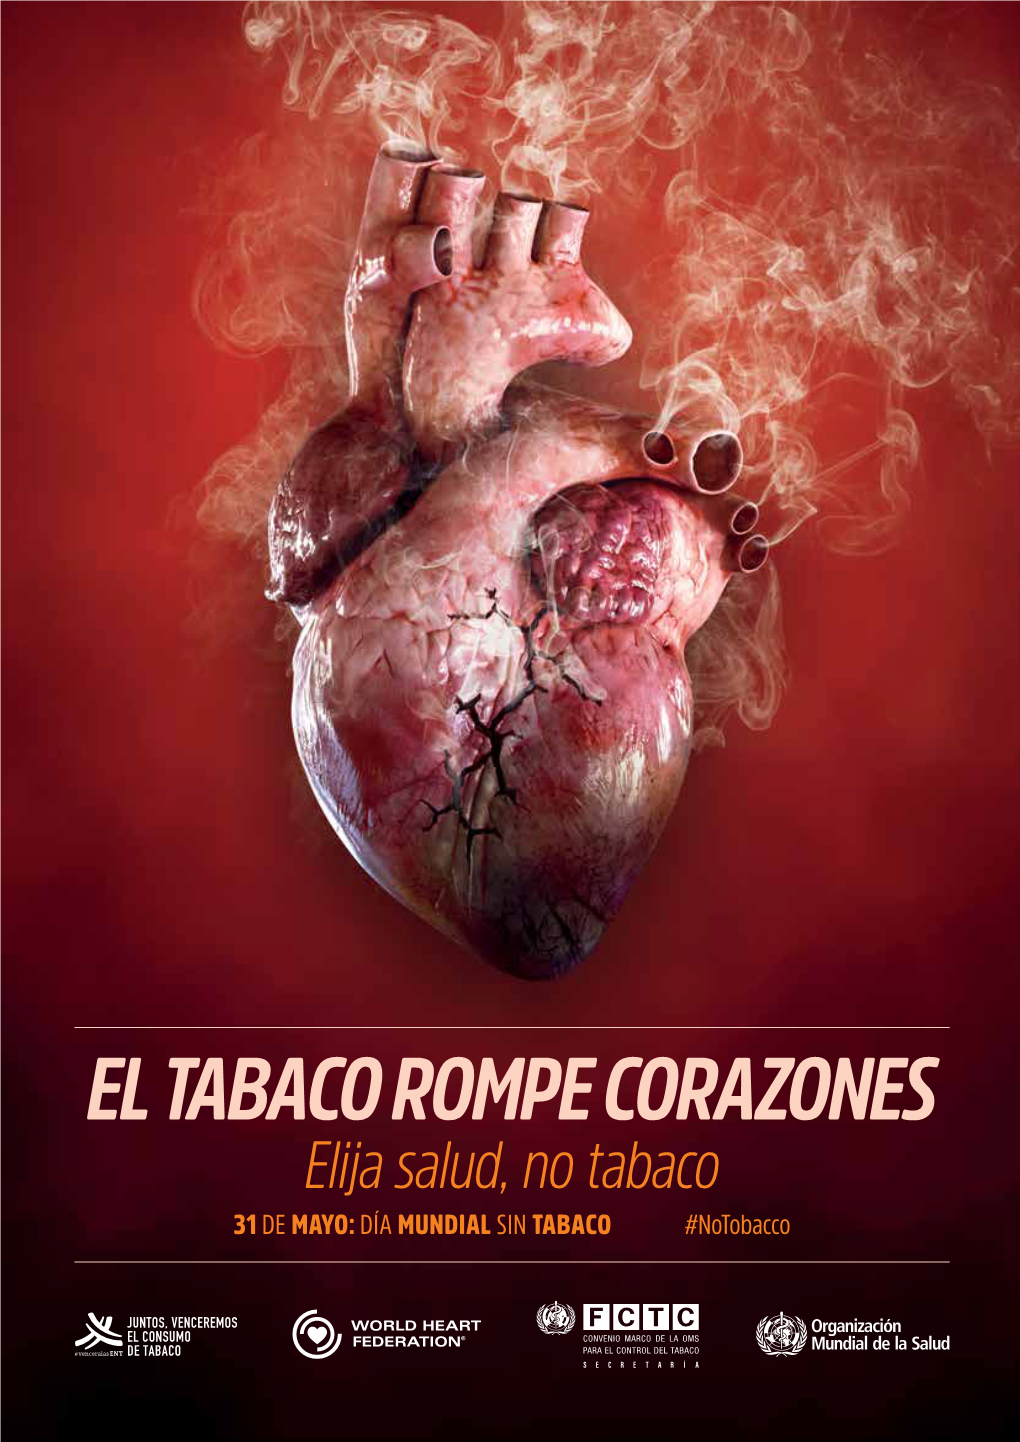 EL TABACO ROMPE CORAZONES Elija Salud, No Tabaco 31 DE MAYO: DÍA MUNDIAL SIN TABACO #Notobacco